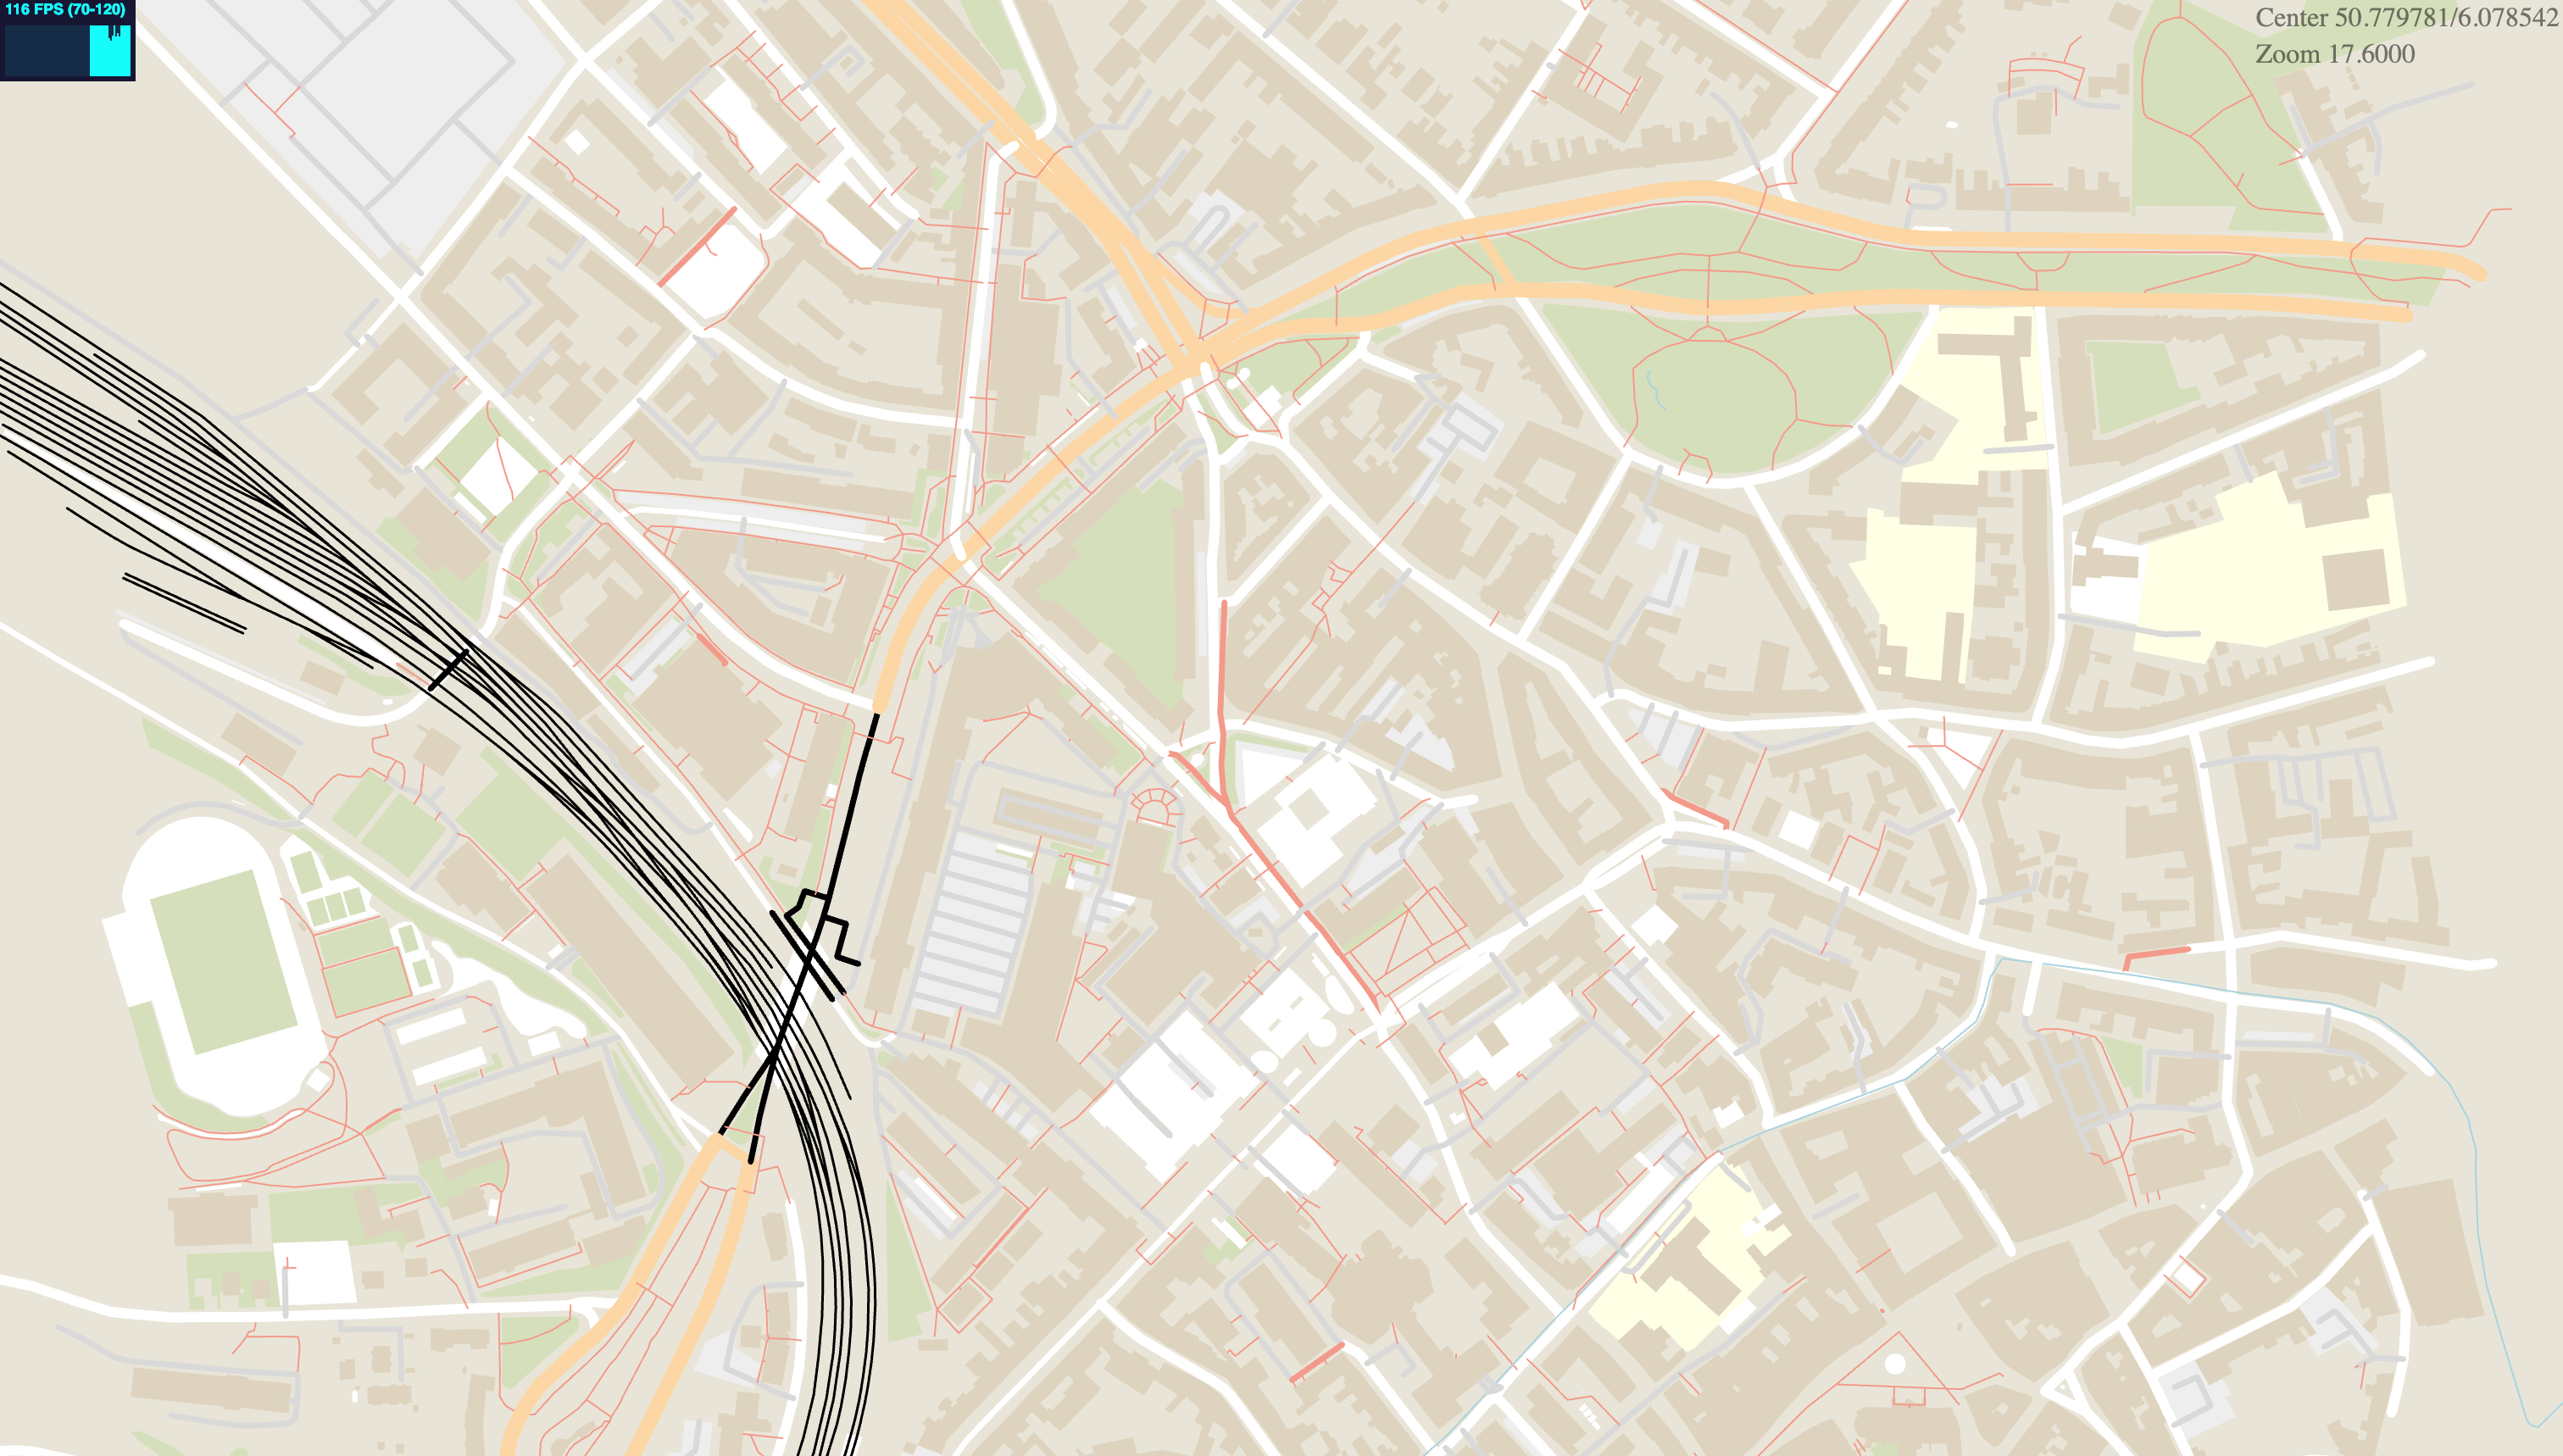 A screenshot showing a part of Aachen rendered in WebGL using OpenStreetMaps